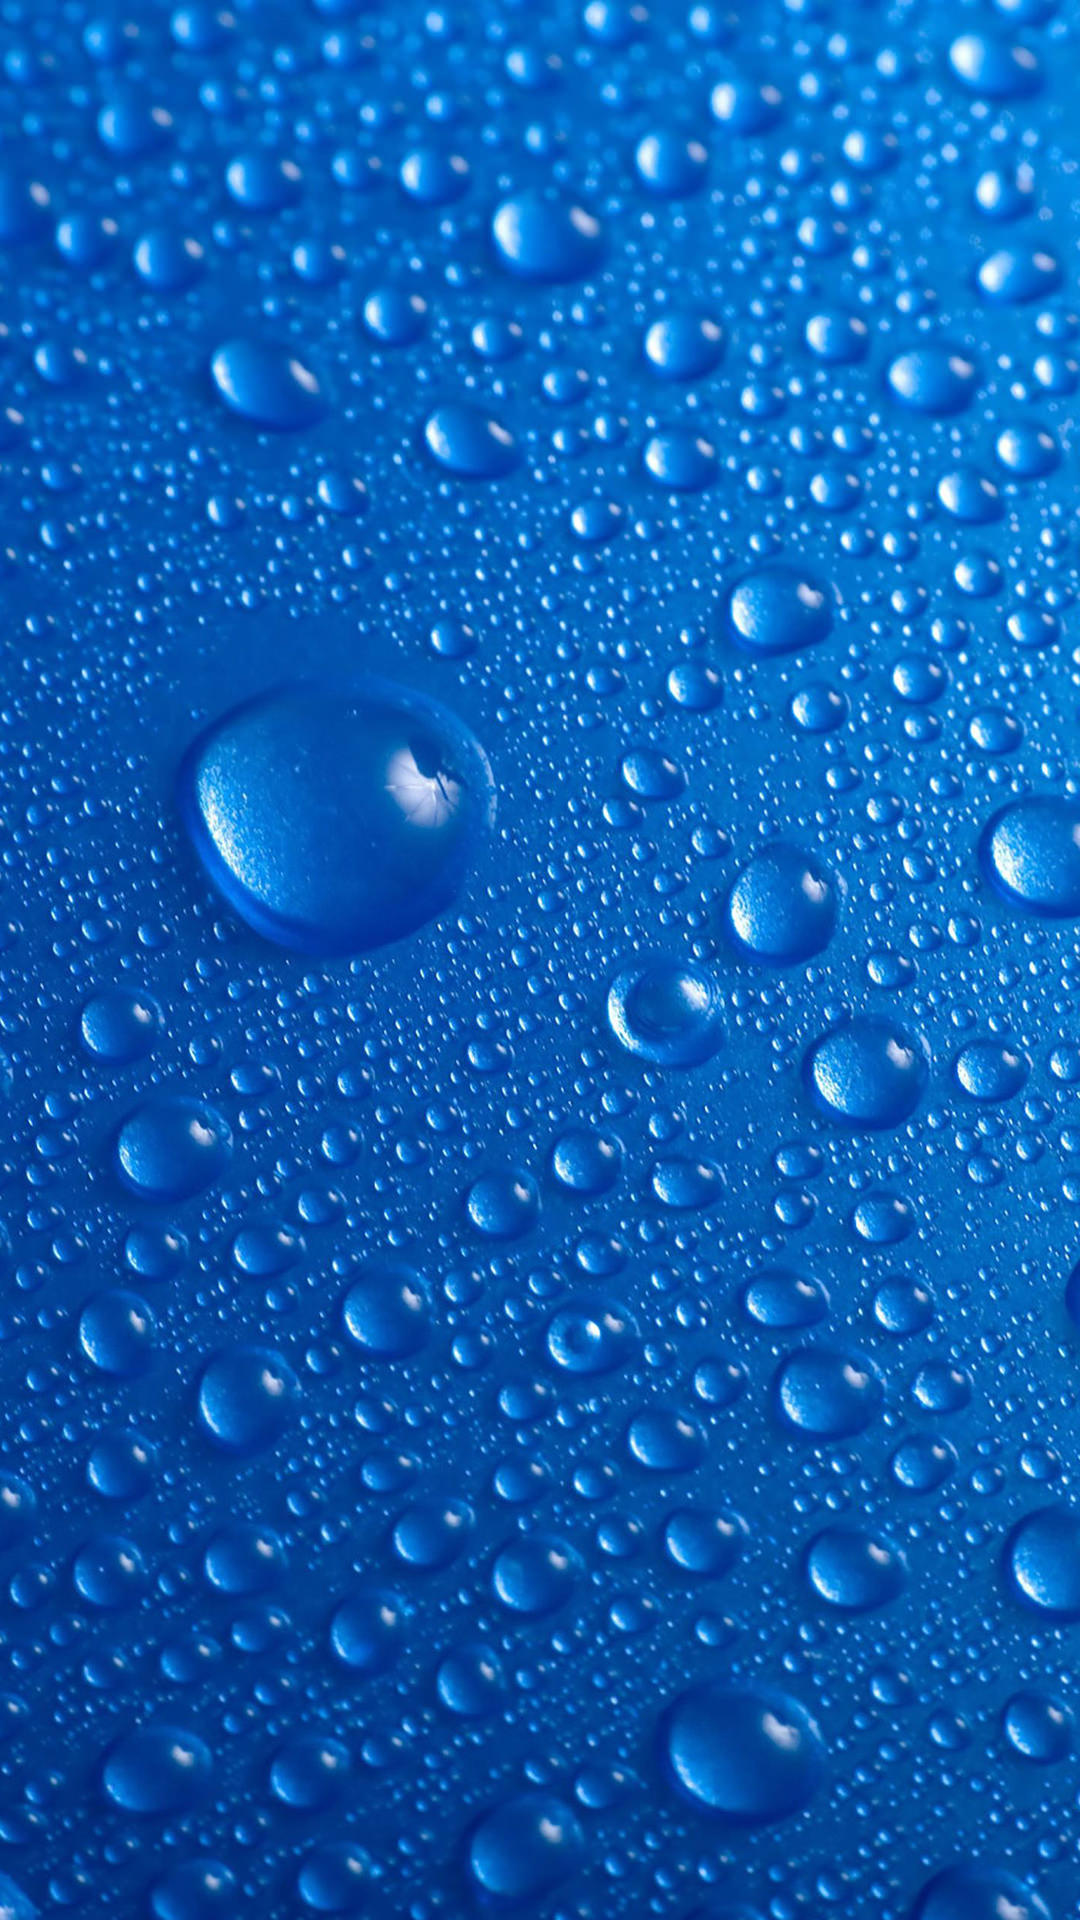 青の水滴 Iphone6 Plus 壁紙 Wallpaperbox